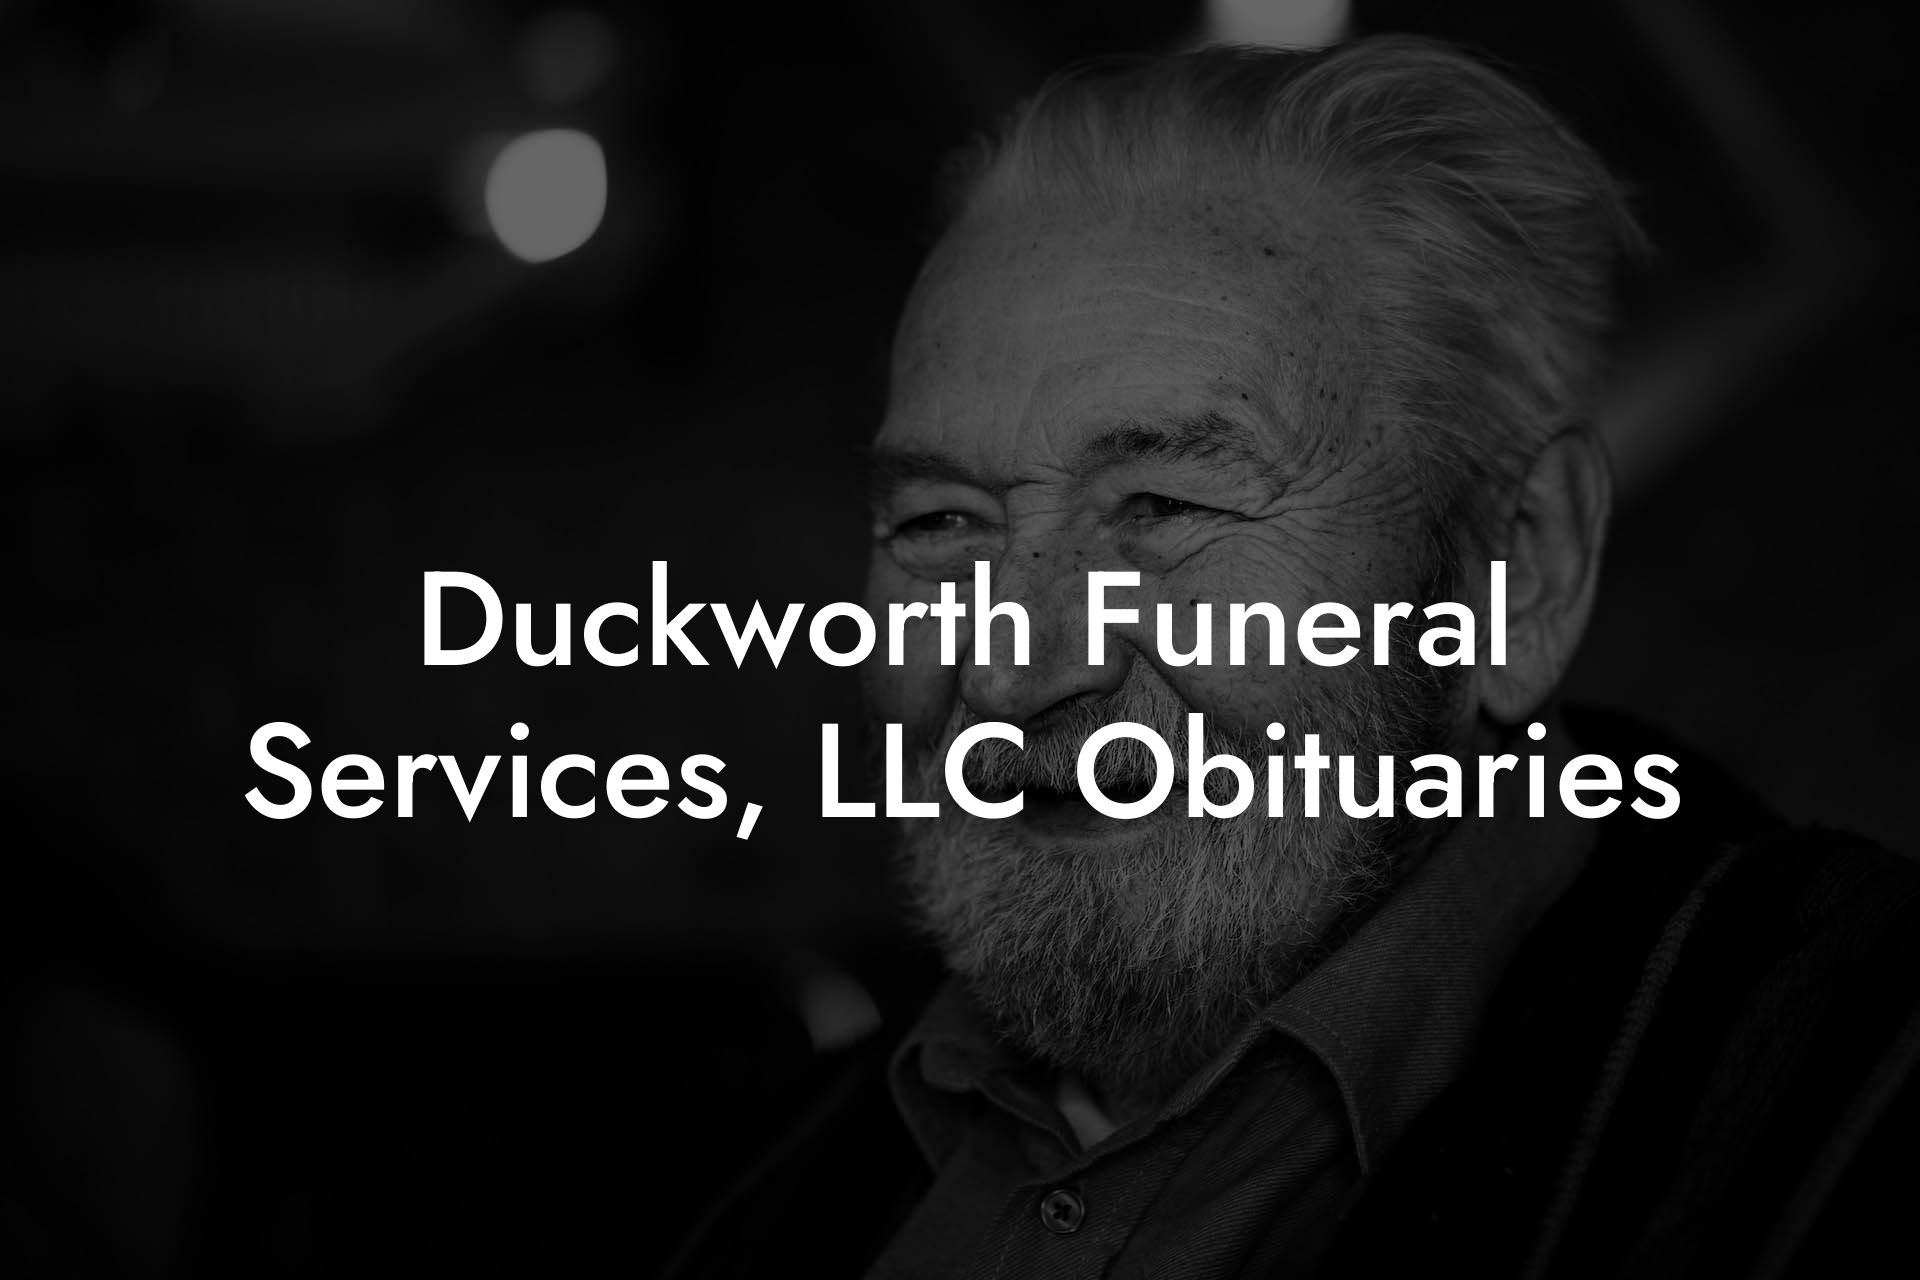 Duckworth Funeral Services, LLC Obituaries